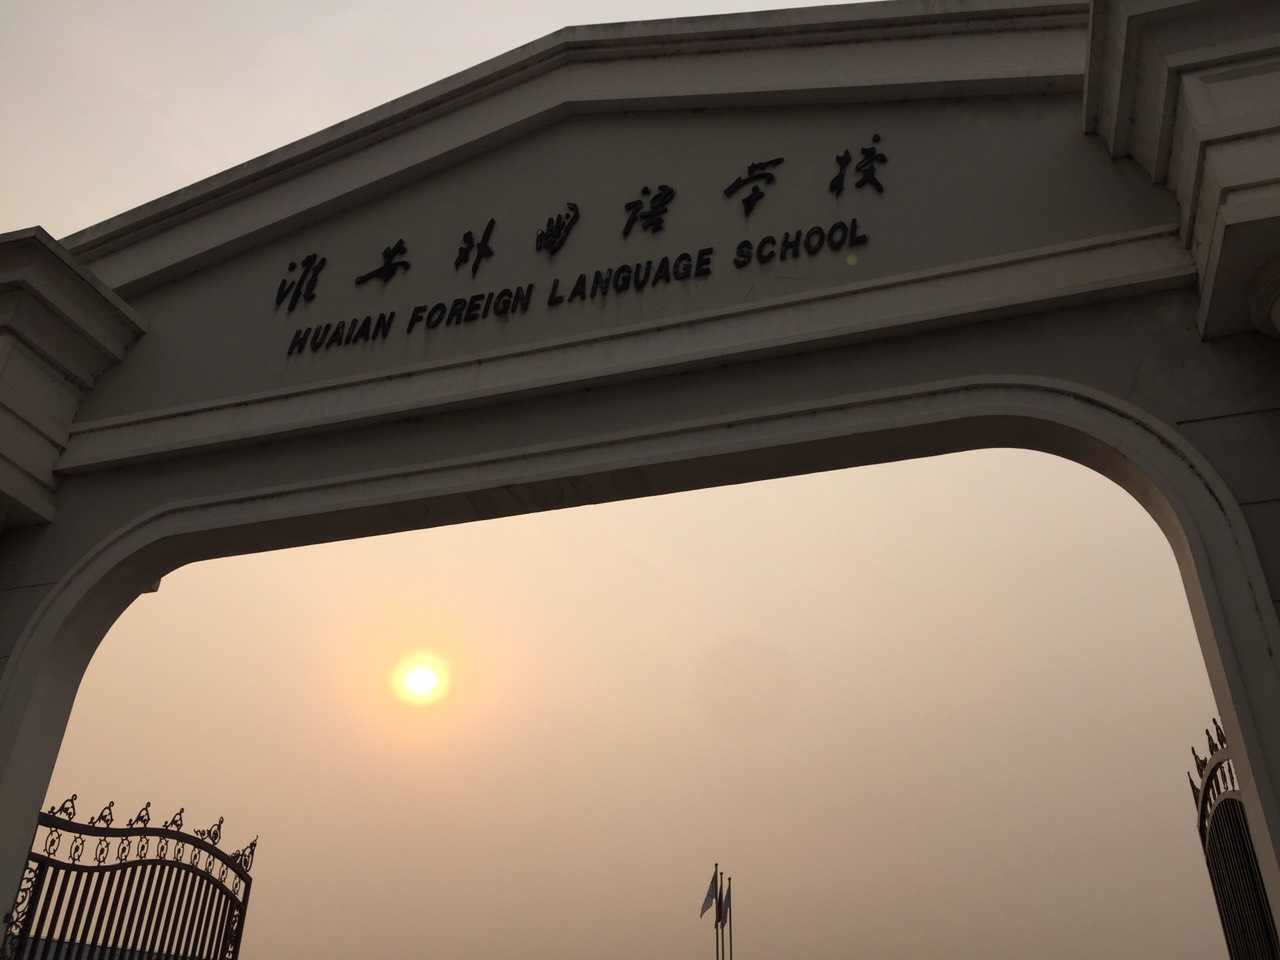 淮安外国语学校——一所三线城市学校如何逆袭北上广?